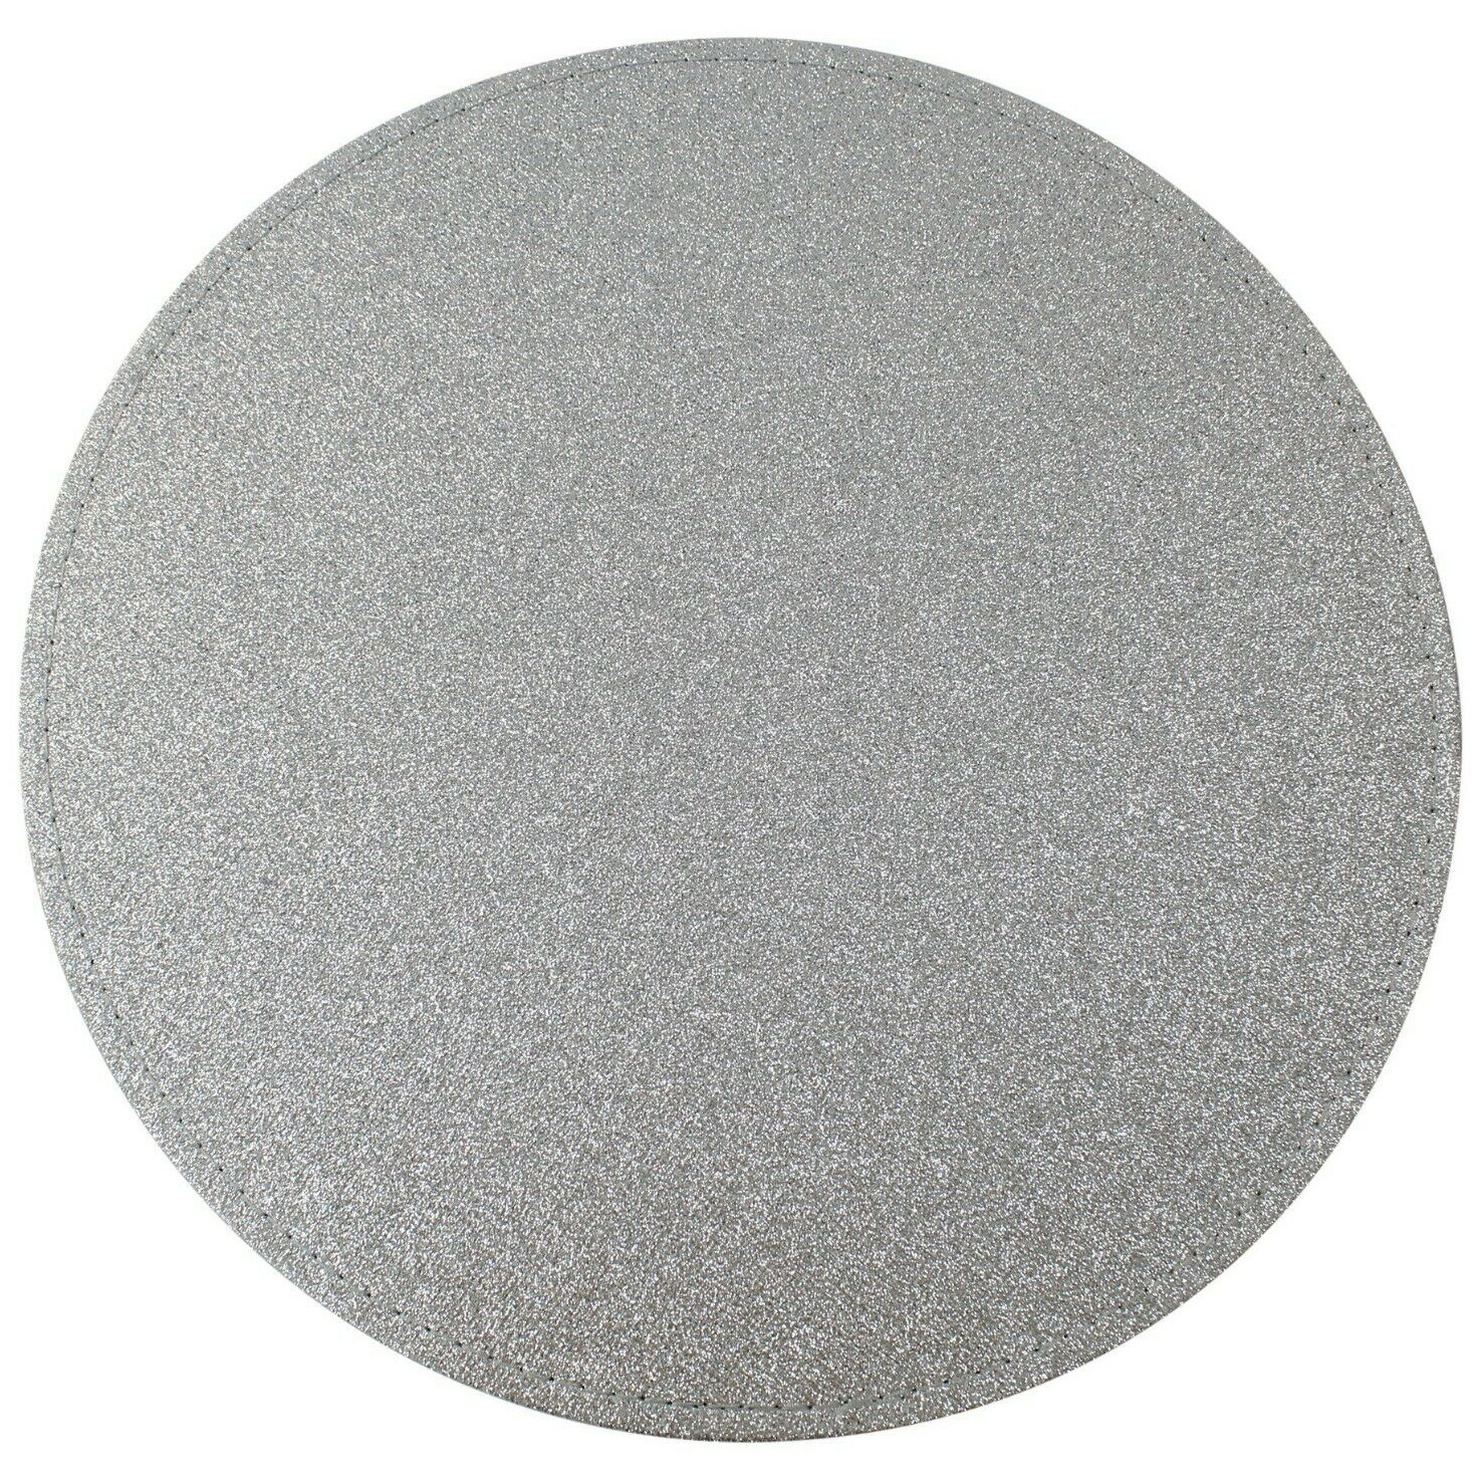 Excellent Houseware 1x Ronde placemats/onderleggers zilver met glitters 33 cm -